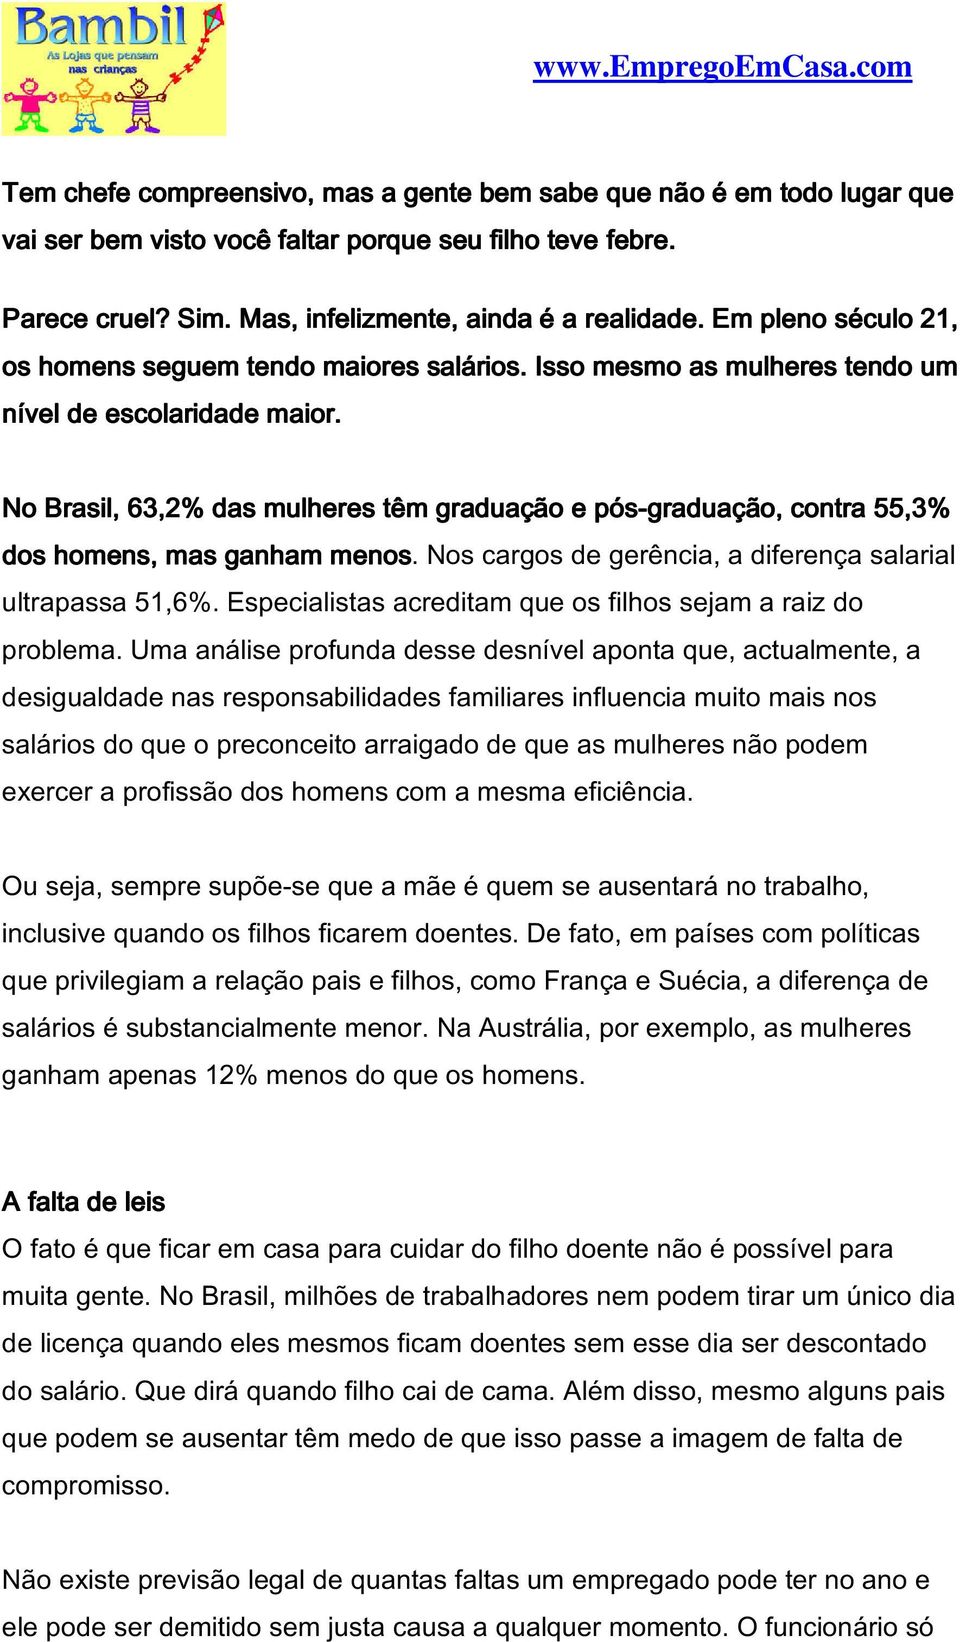 No Brasil, 63,2% das mulheres têm graduação e pós-graduação, contra 55,3% dos homens, mas ganham menos. Nos cargos de gerência, a diferença salarial ultrapassa 51,6%.